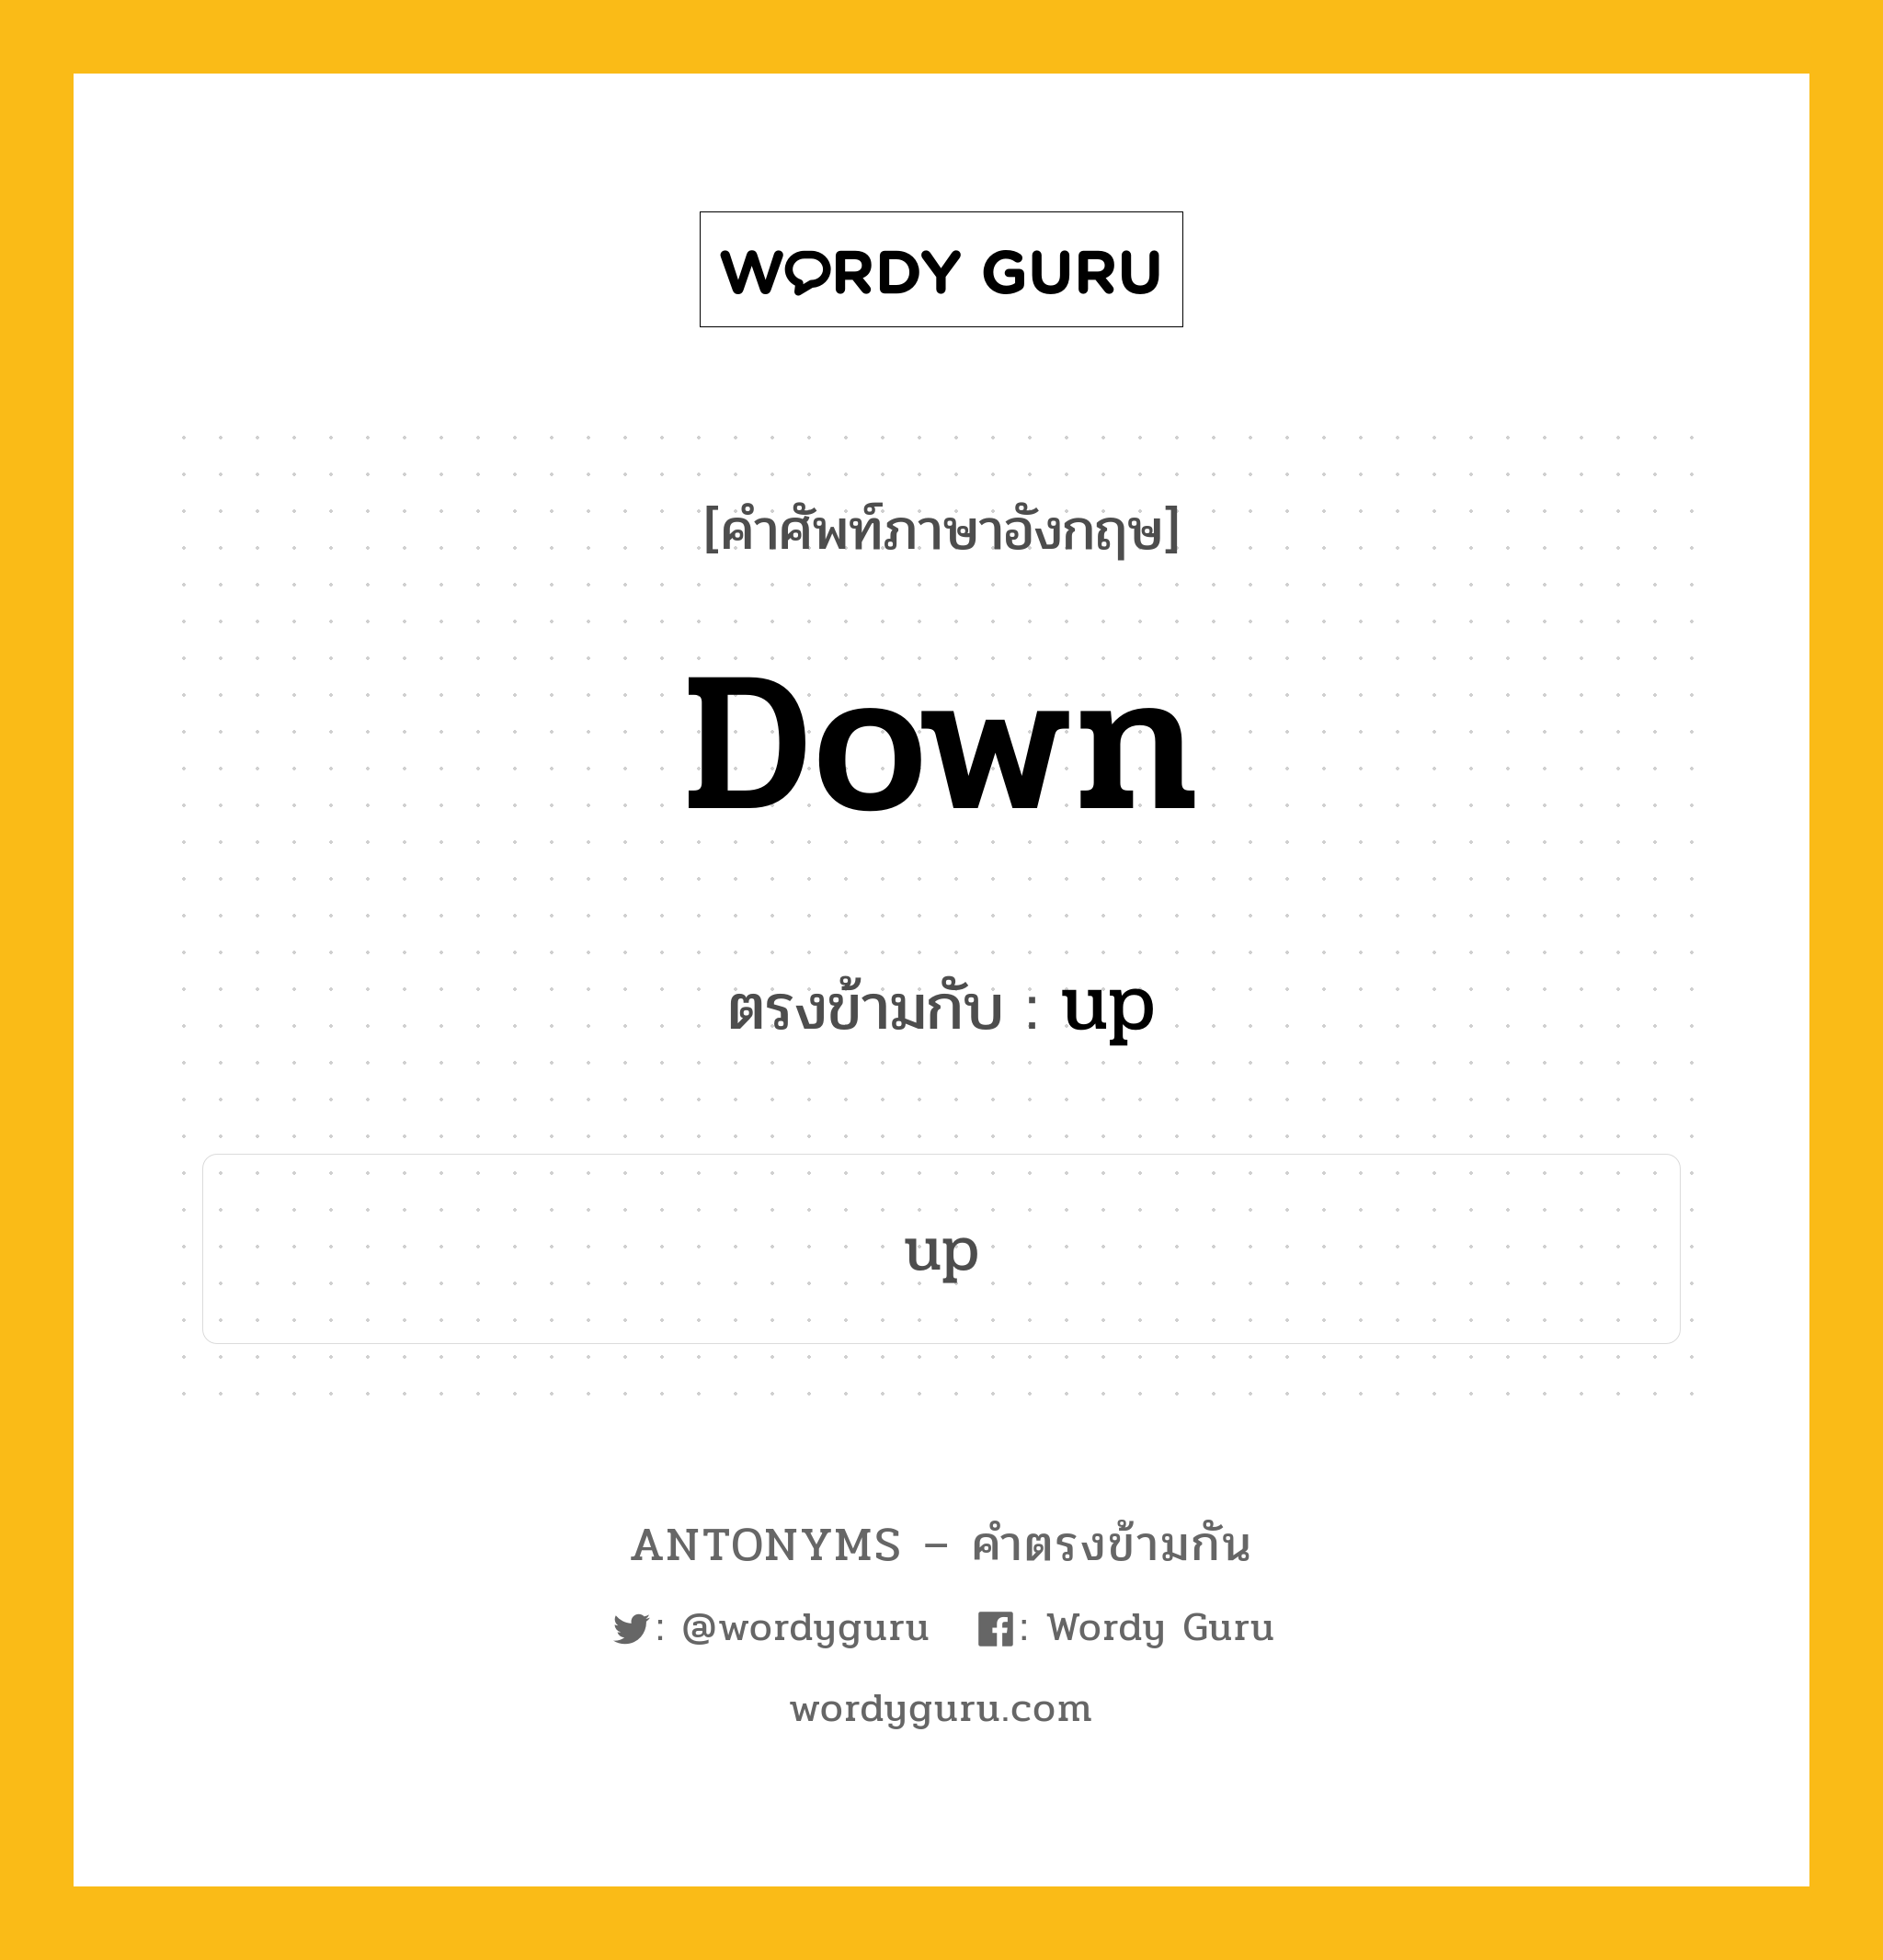 down เป็นคำตรงข้ามกับคำไหนบ้าง?, คำศัพท์ภาษาอังกฤษ down ตรงข้ามกับ up หมวด up